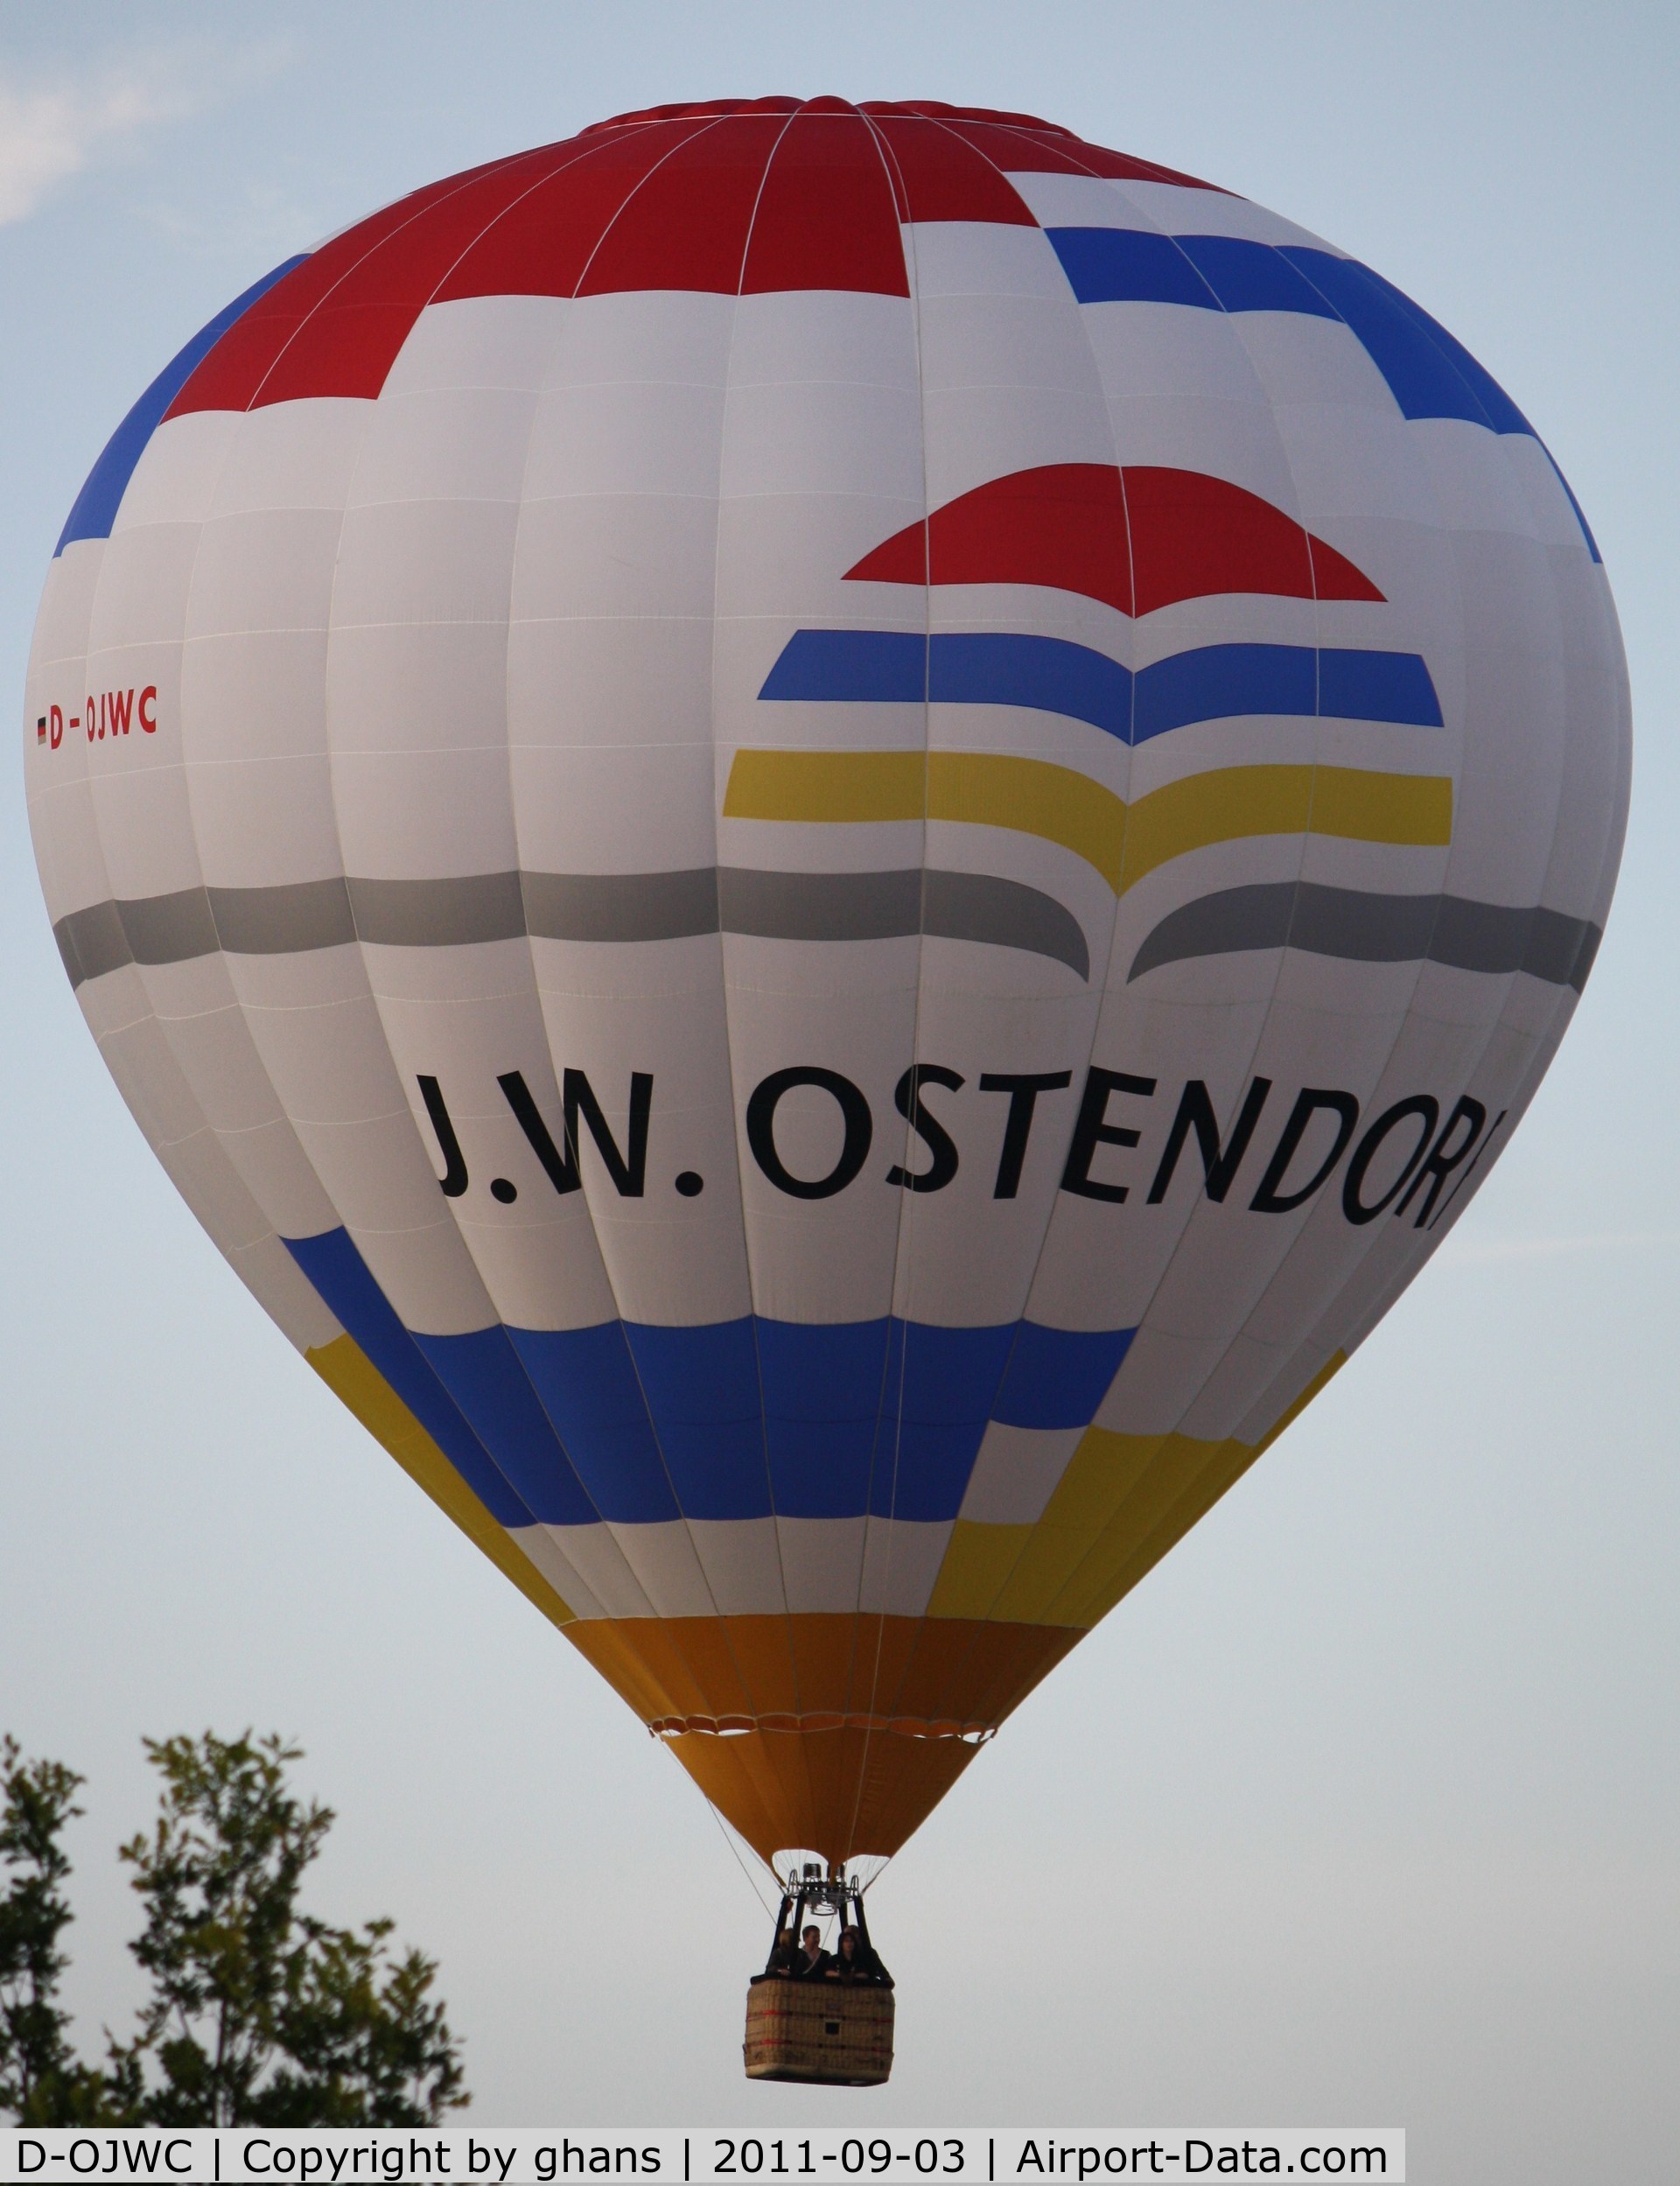 D-OJWC, 2005 Schroeder Fire Balloons G30/24 C/N 447, WIM 2011
'J.W.Ostendorf'